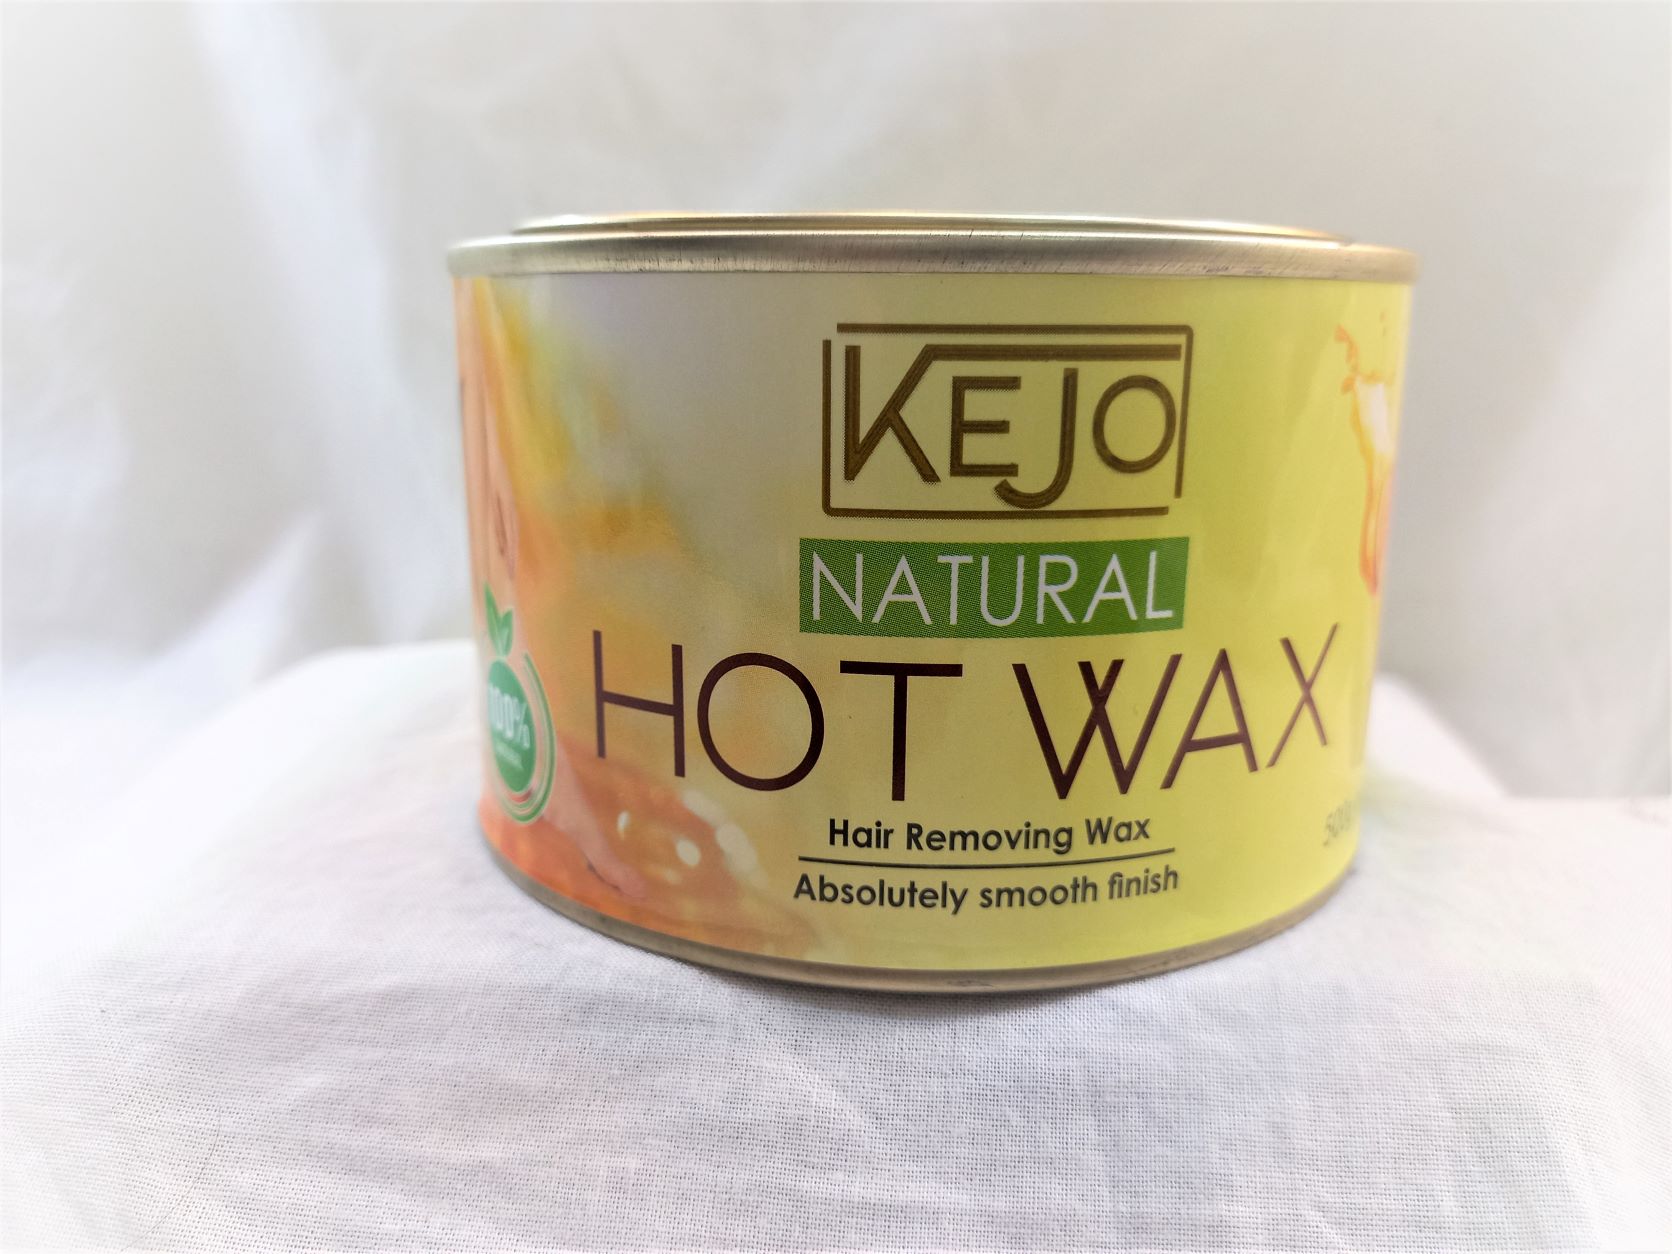 Buy Kejo Natural Cold Wax 500g In Sri Lanka –